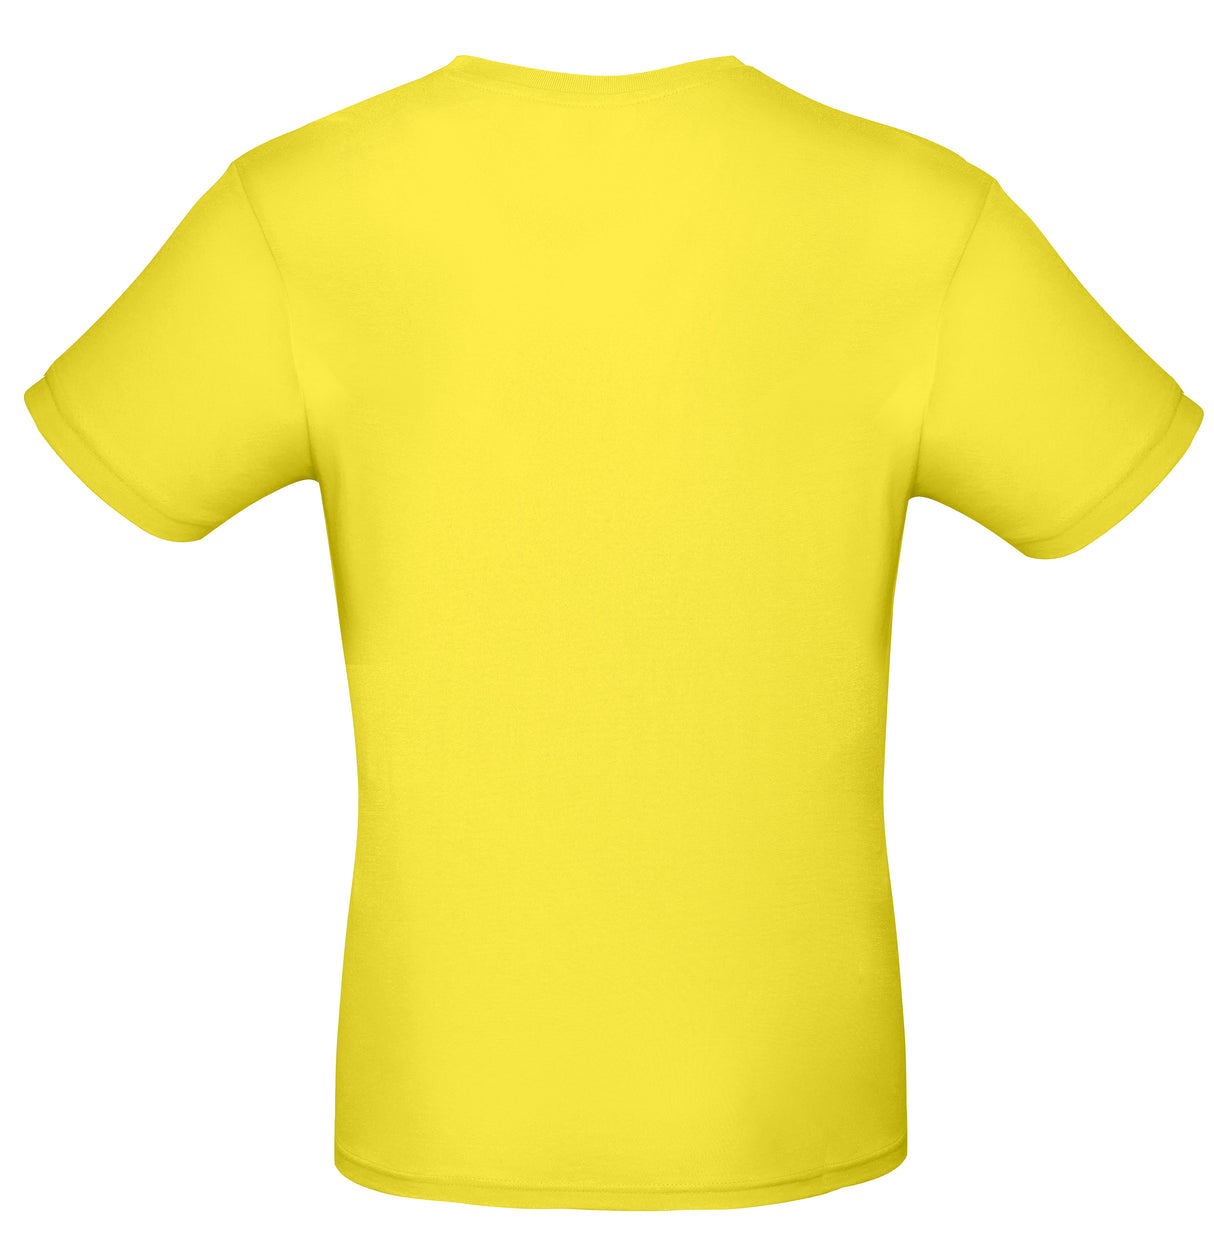 B&C Collection #E150 - Solar Yellow